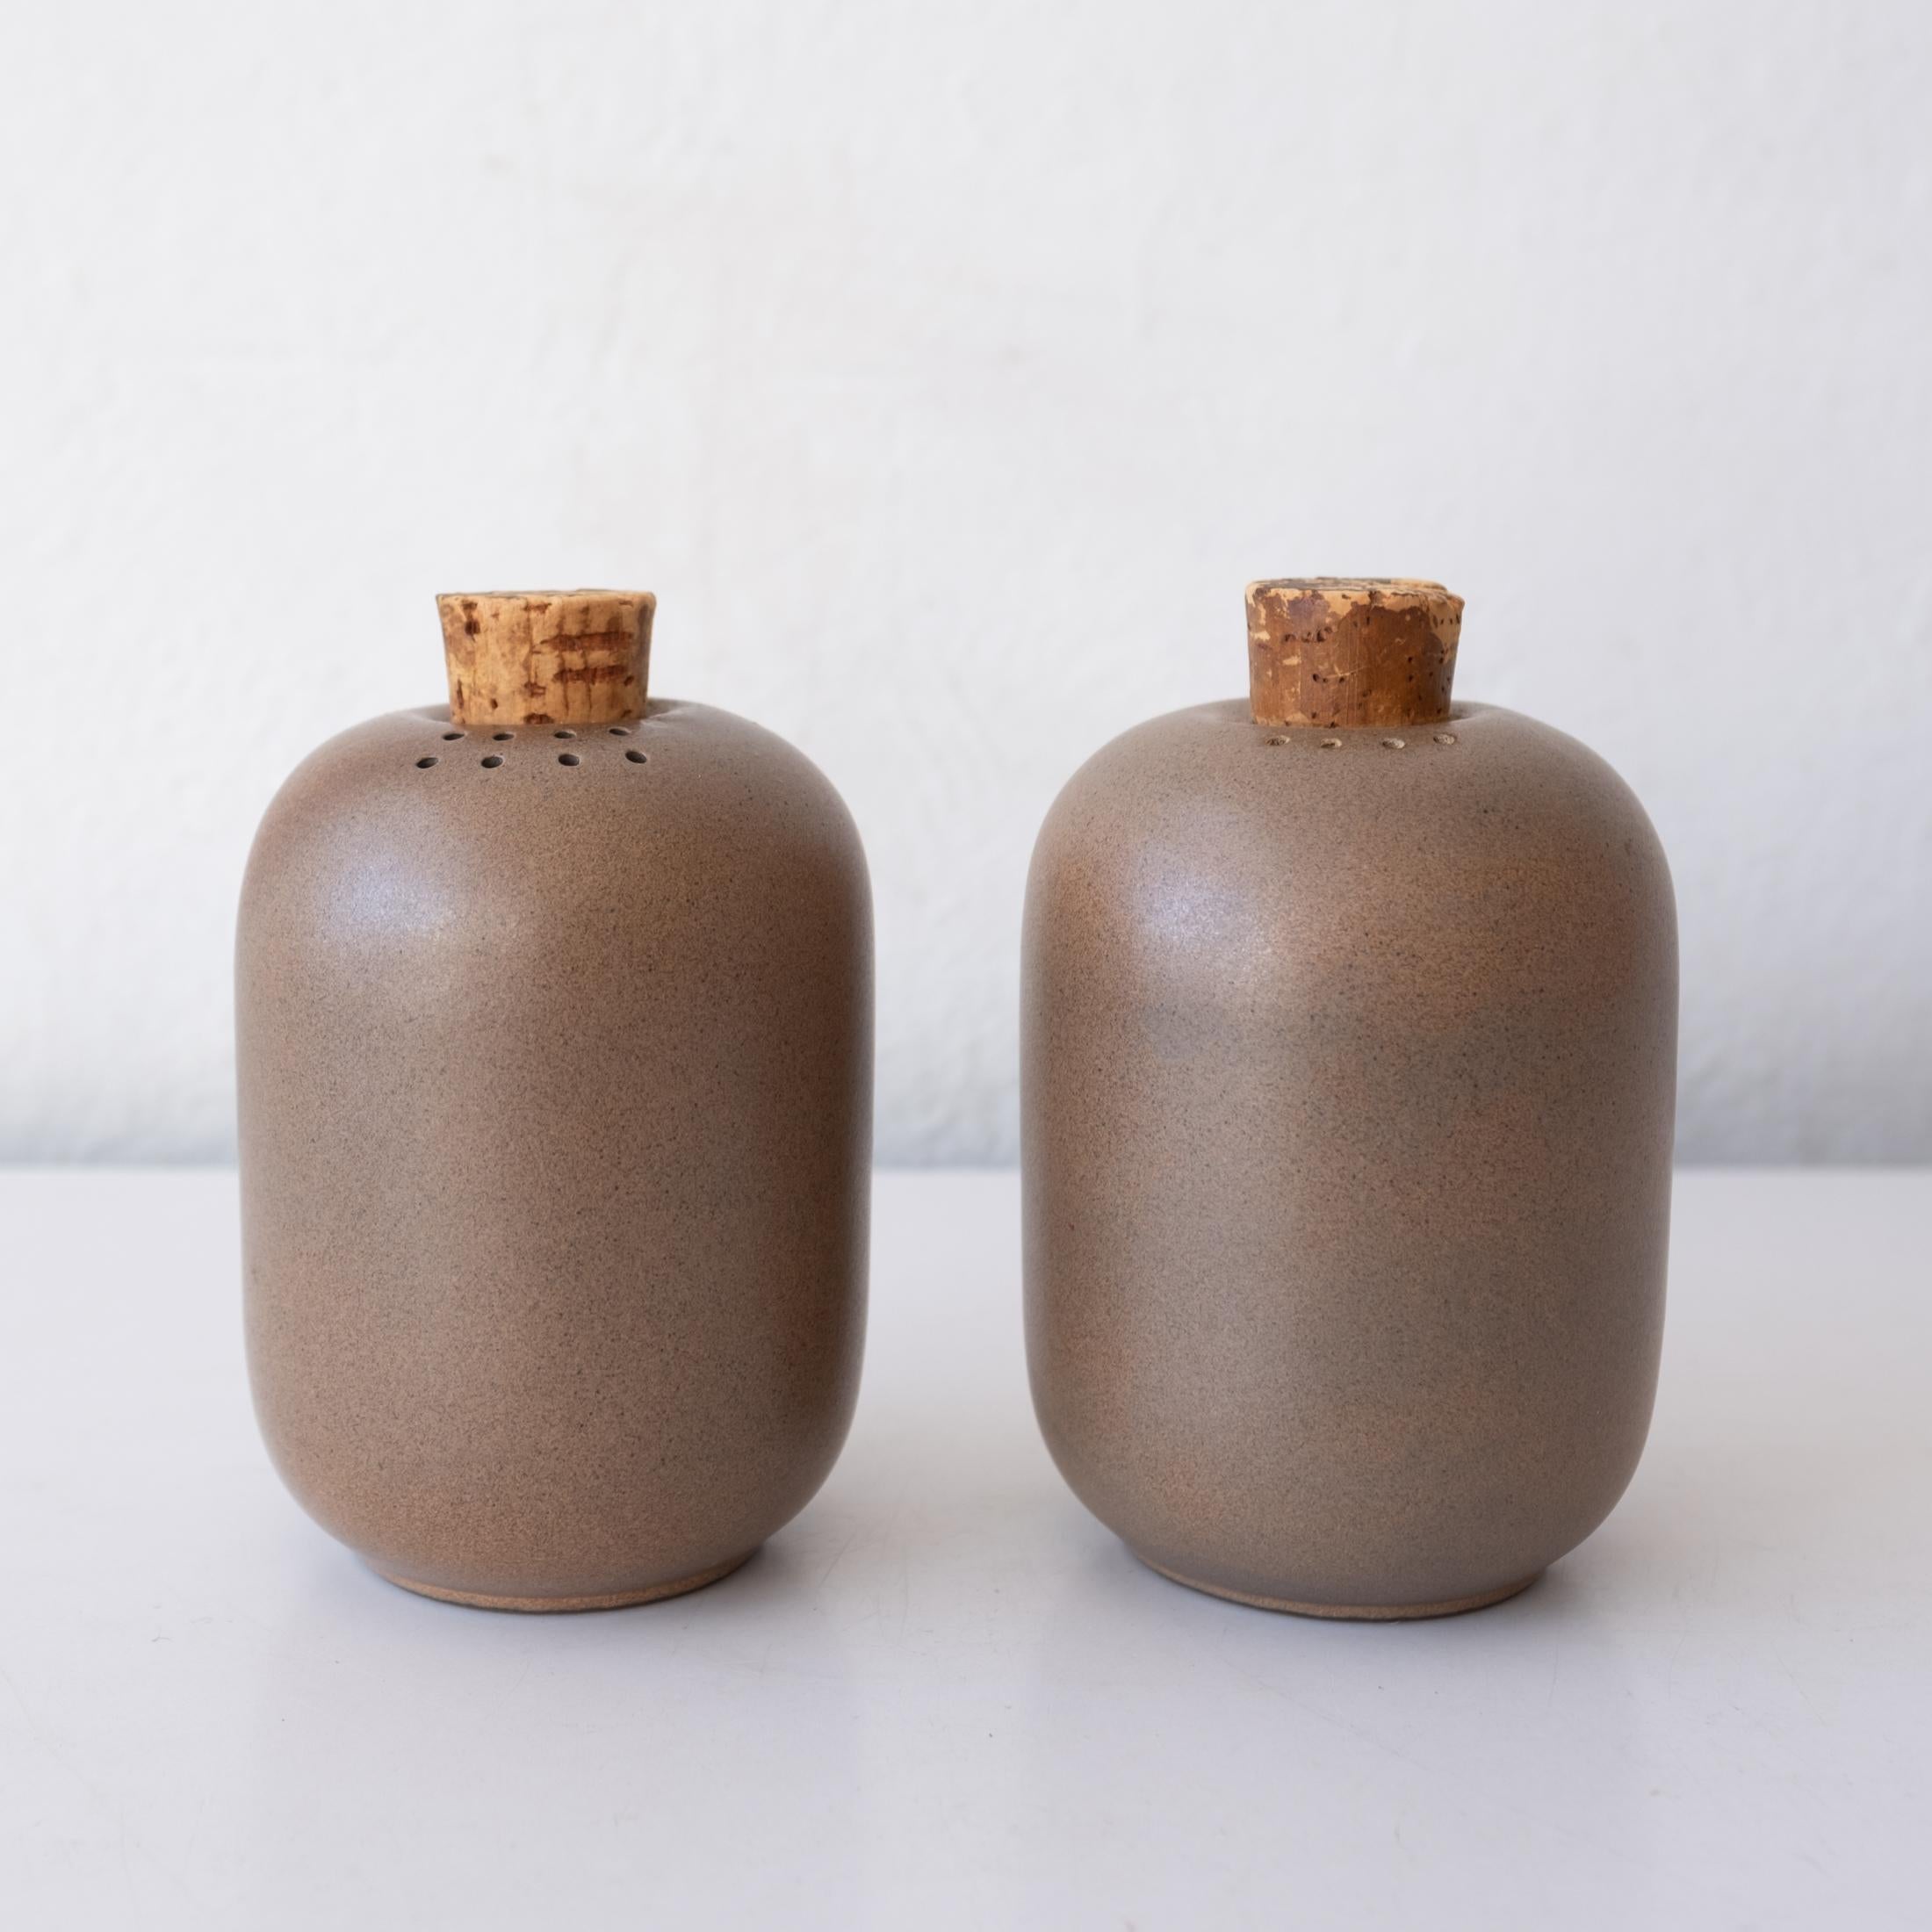 Ensemble sel et poivre conçu par Edith Heath pour sa société Heath Ceramics. Un design classique réalisé par un céramiste d'avant-garde. Fabriqué en Californie dans les années 1950. 

